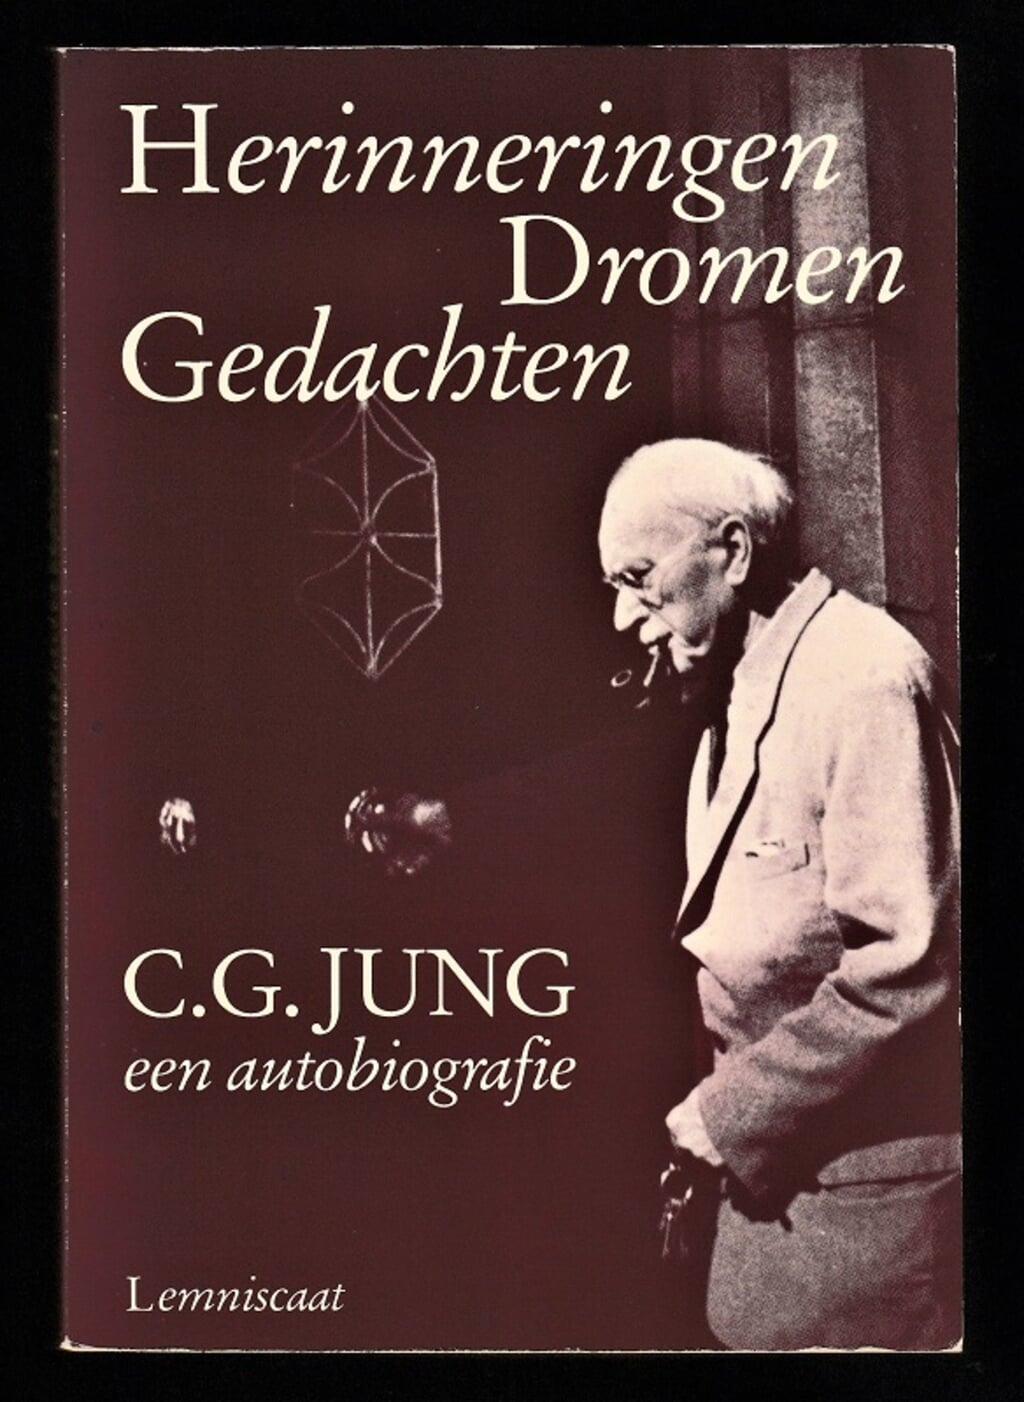 HERINNERINGEN, DROMEN, GEDACHTEN - biografie van CARL JUNG